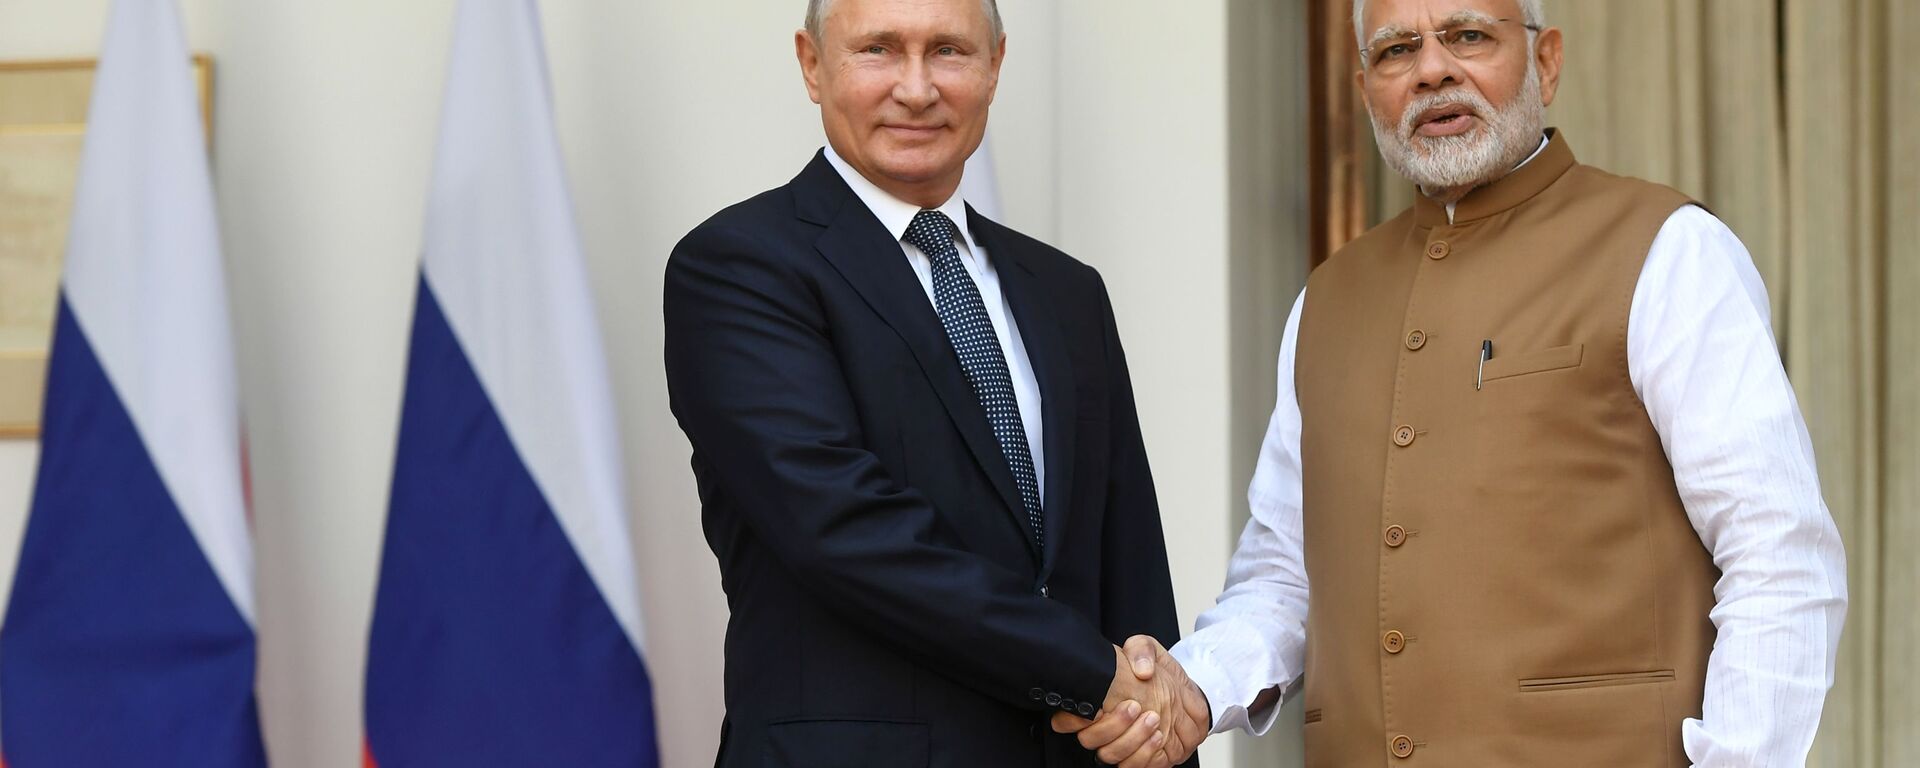 Tổng thống Nga Vladimir Putin và Thủ tướng Cộng hòa Ấn Độ Narendra Modi trong cuộc gặp tại Cung điện Hyderabad ở New Delhi - Sputnik Việt Nam, 1920, 15.08.2022